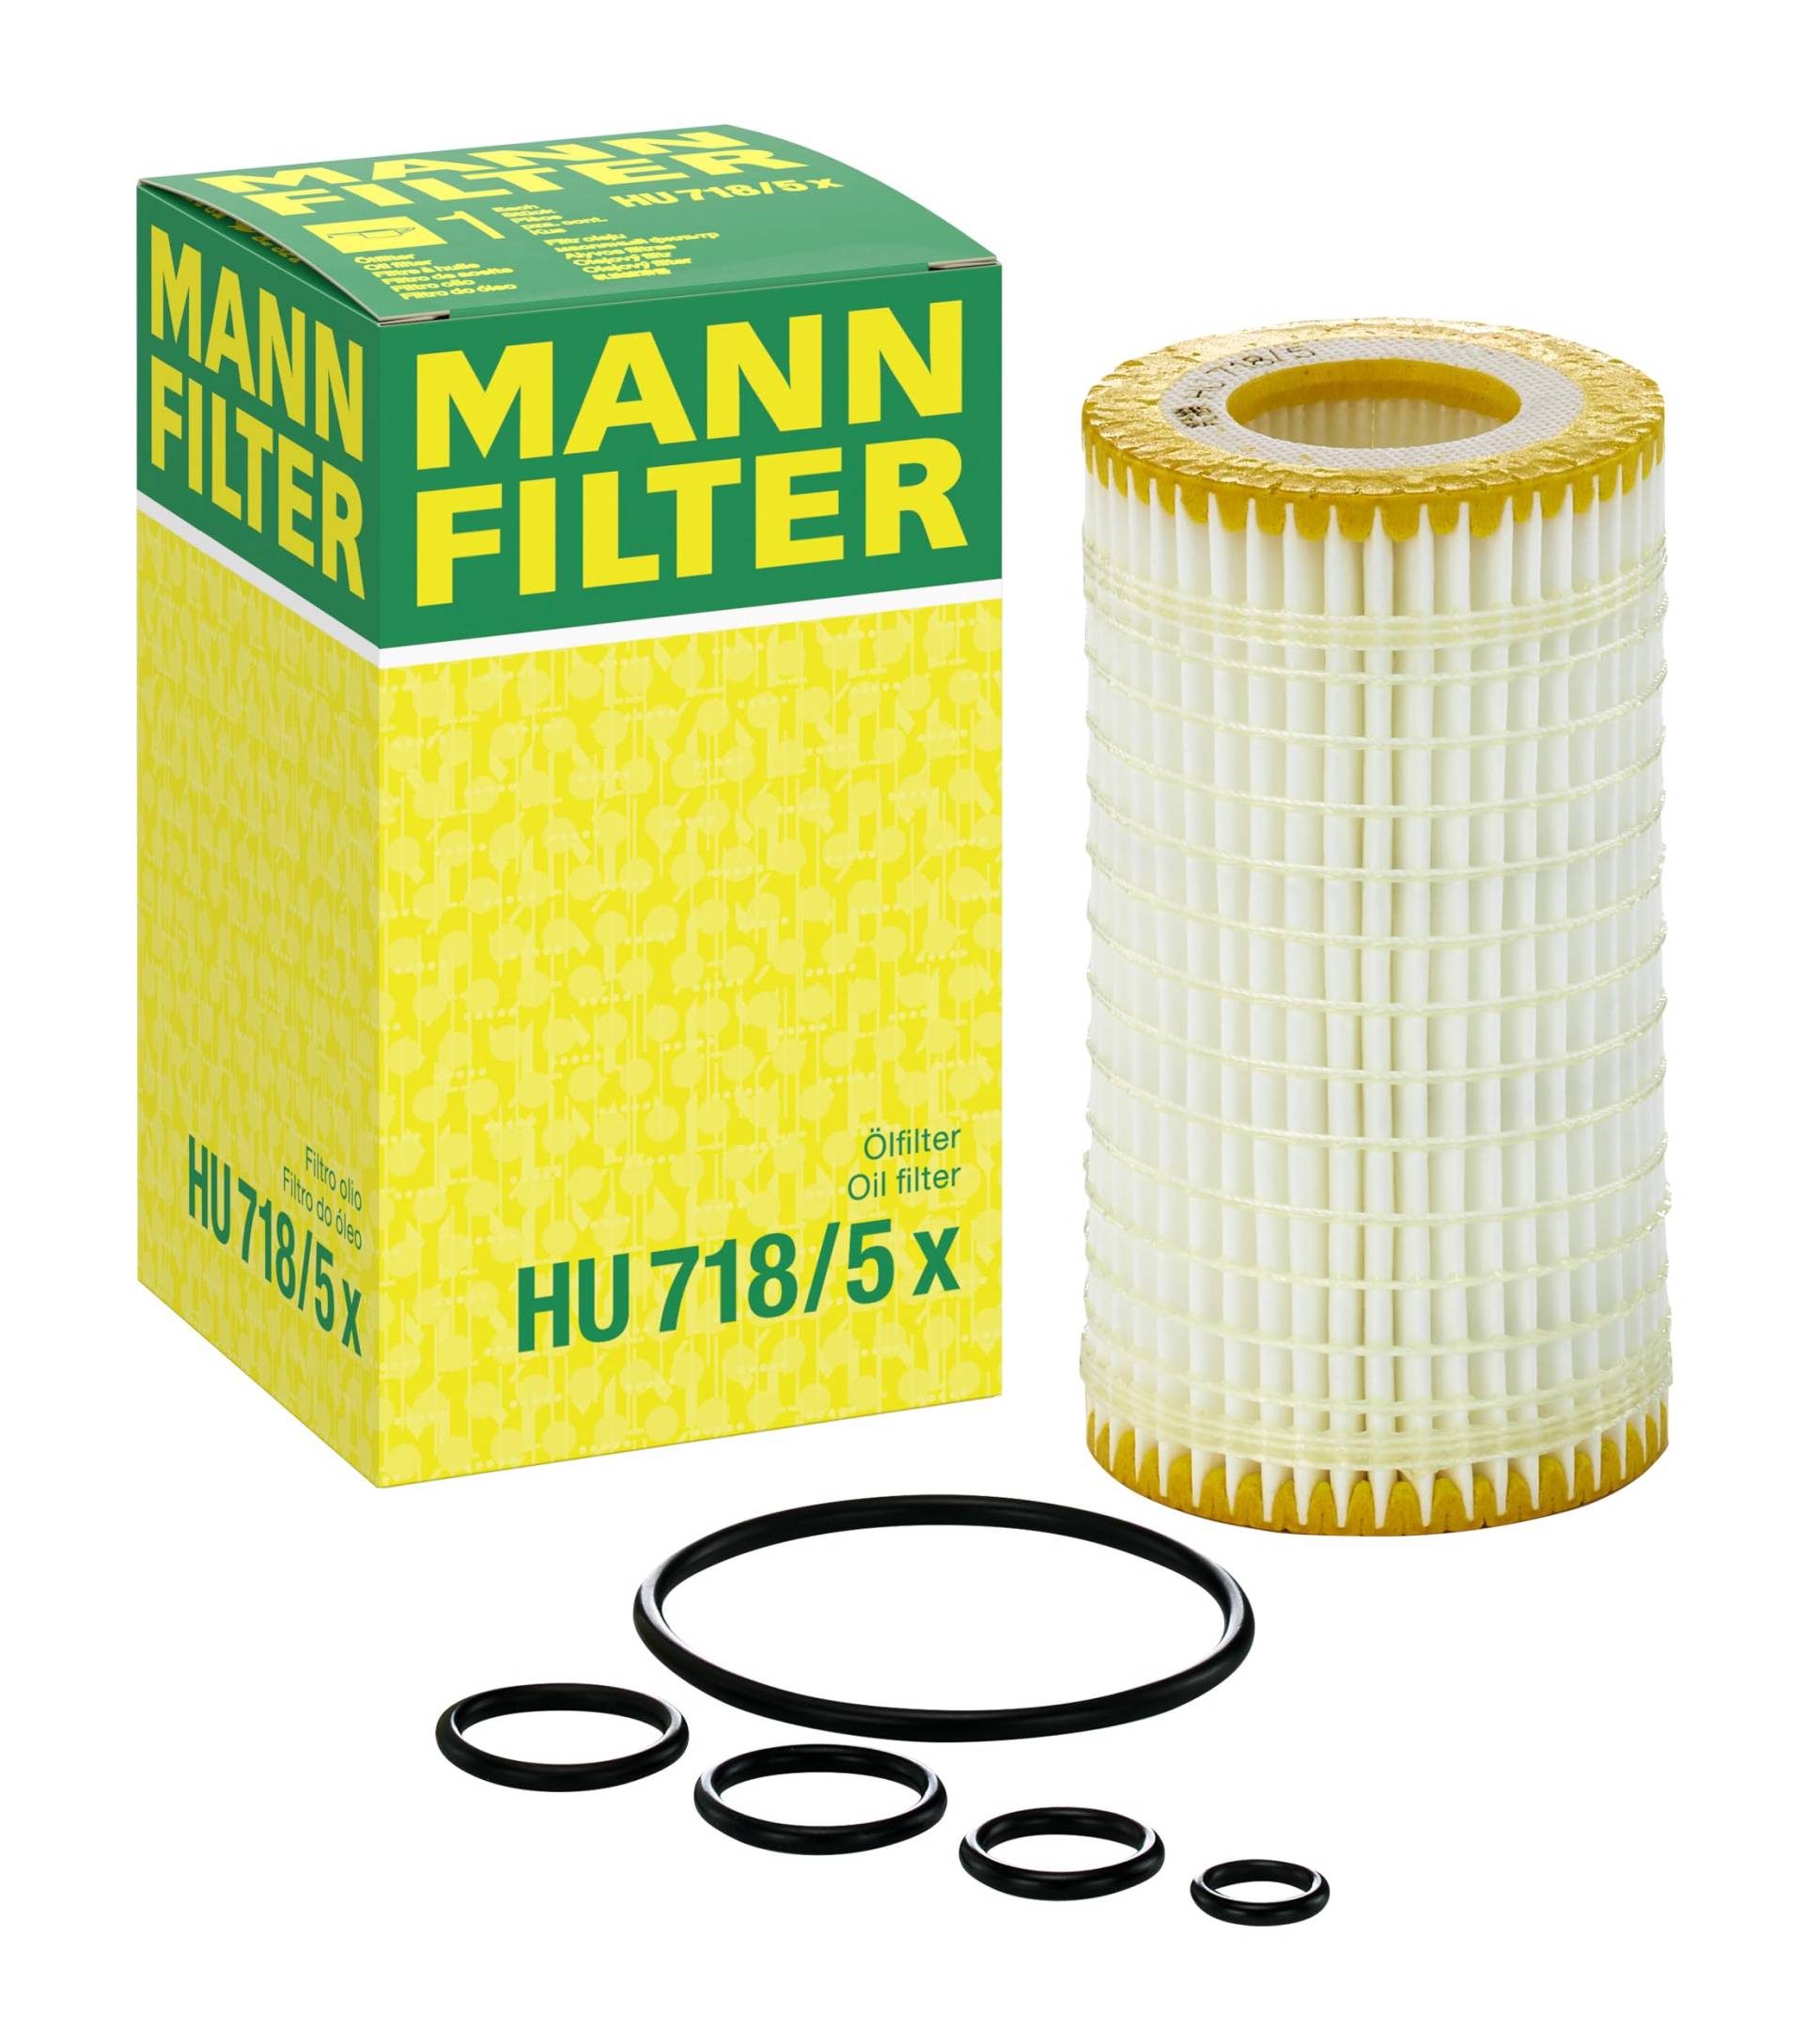 MANN-FILTER HU 718/5 X Ölfilter – Ölfilter Satz mit Dichtung / Dichtungssatz – Für PKW von MANN-FILTER